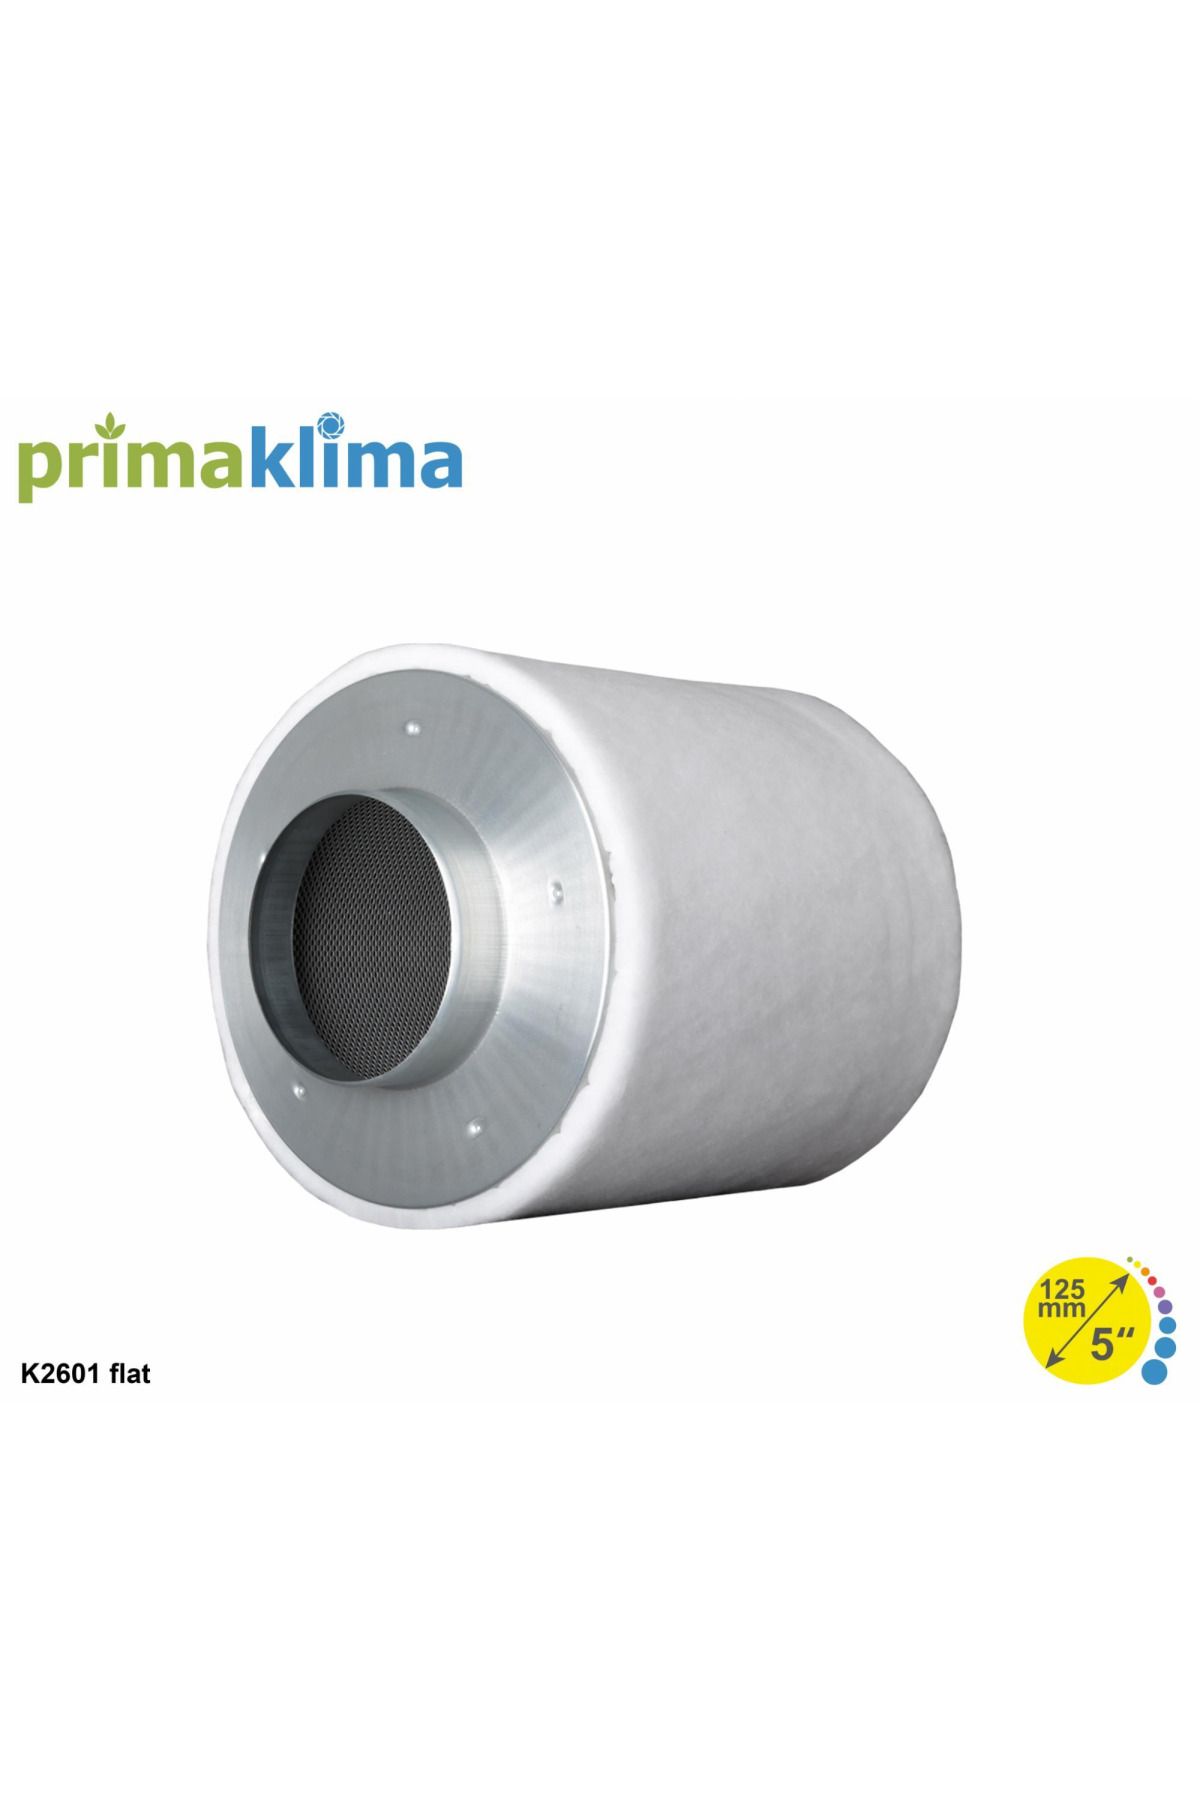 Prima Klima K2601-flat Karbon Filtre 440 M3/h 125 Mm